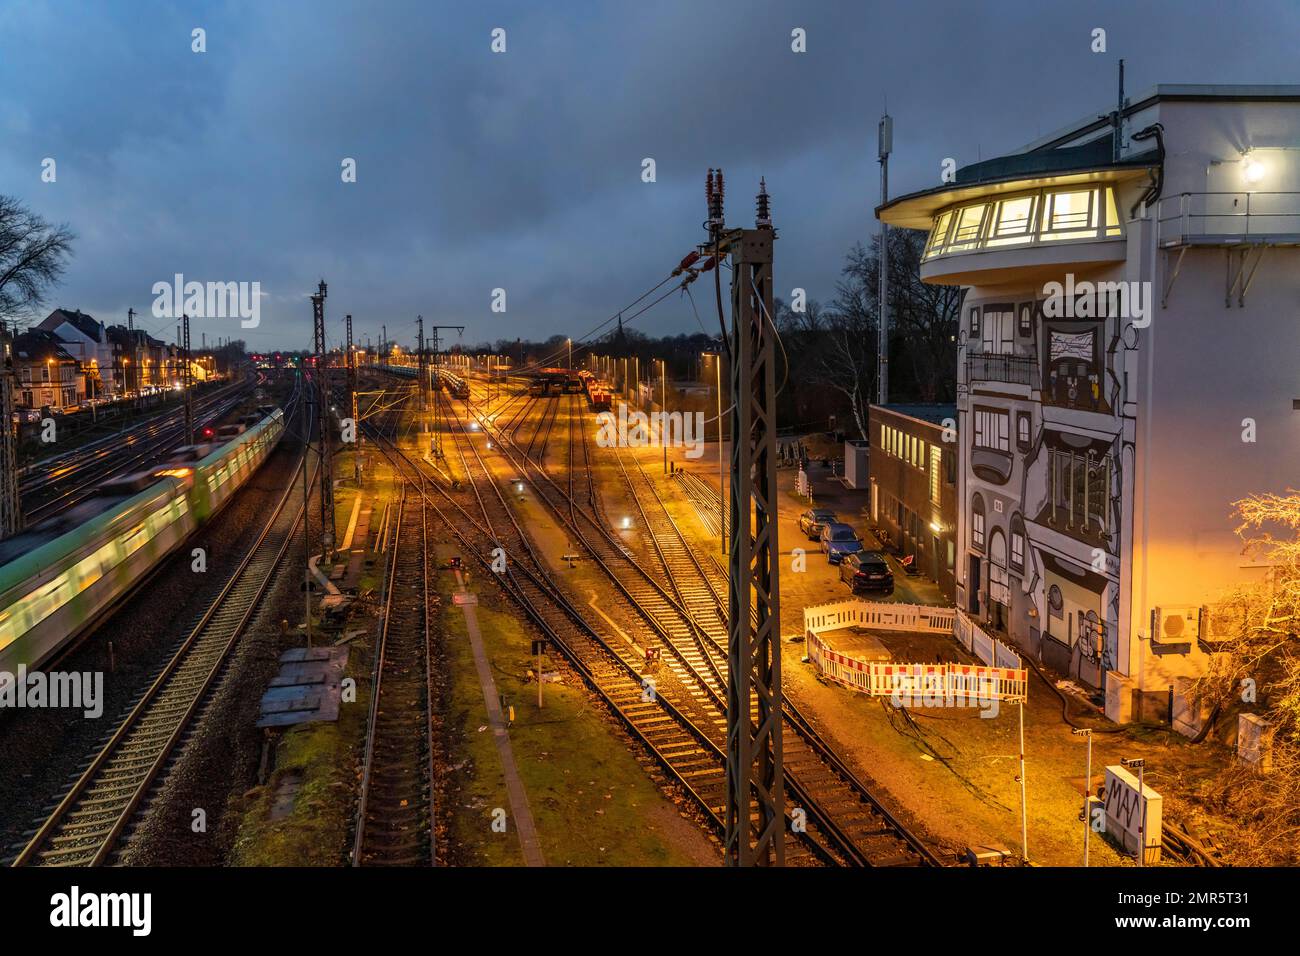 La cassa di segnalazione Deutsche Bahn AG di Mülheim-Styrum controlla il traffico ferroviario su una delle linee ferroviarie più trafficate della Germania, tra Essen e Duisburg; Foto Stock